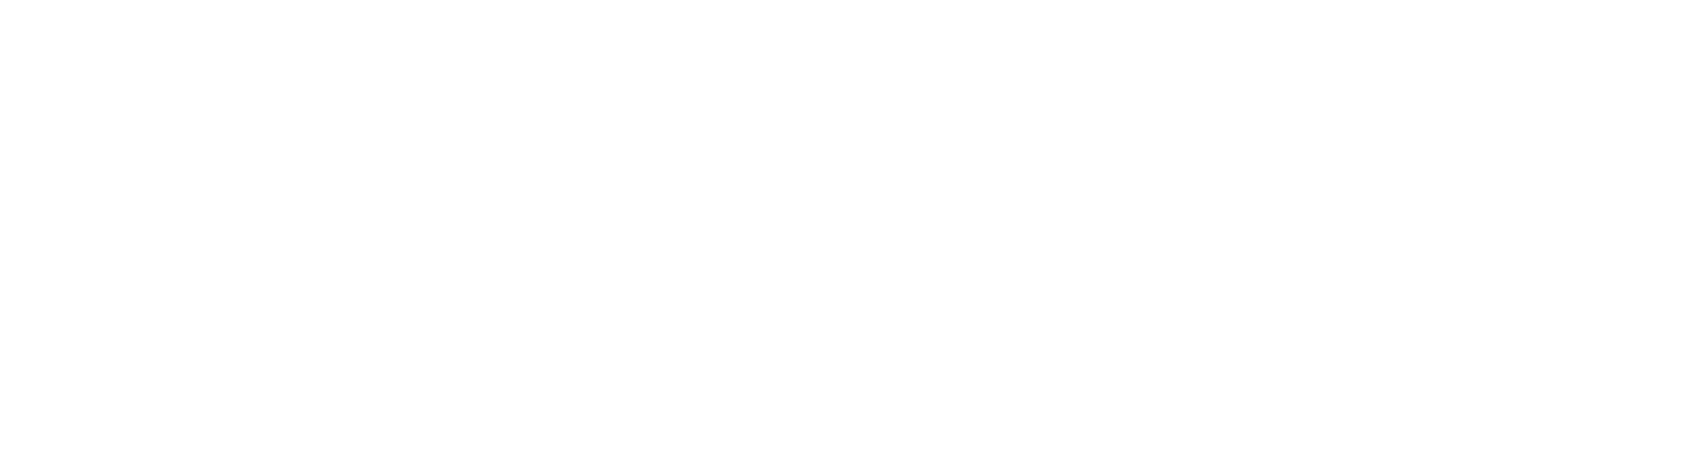 Cober_RGB_Logo_Reverse-1